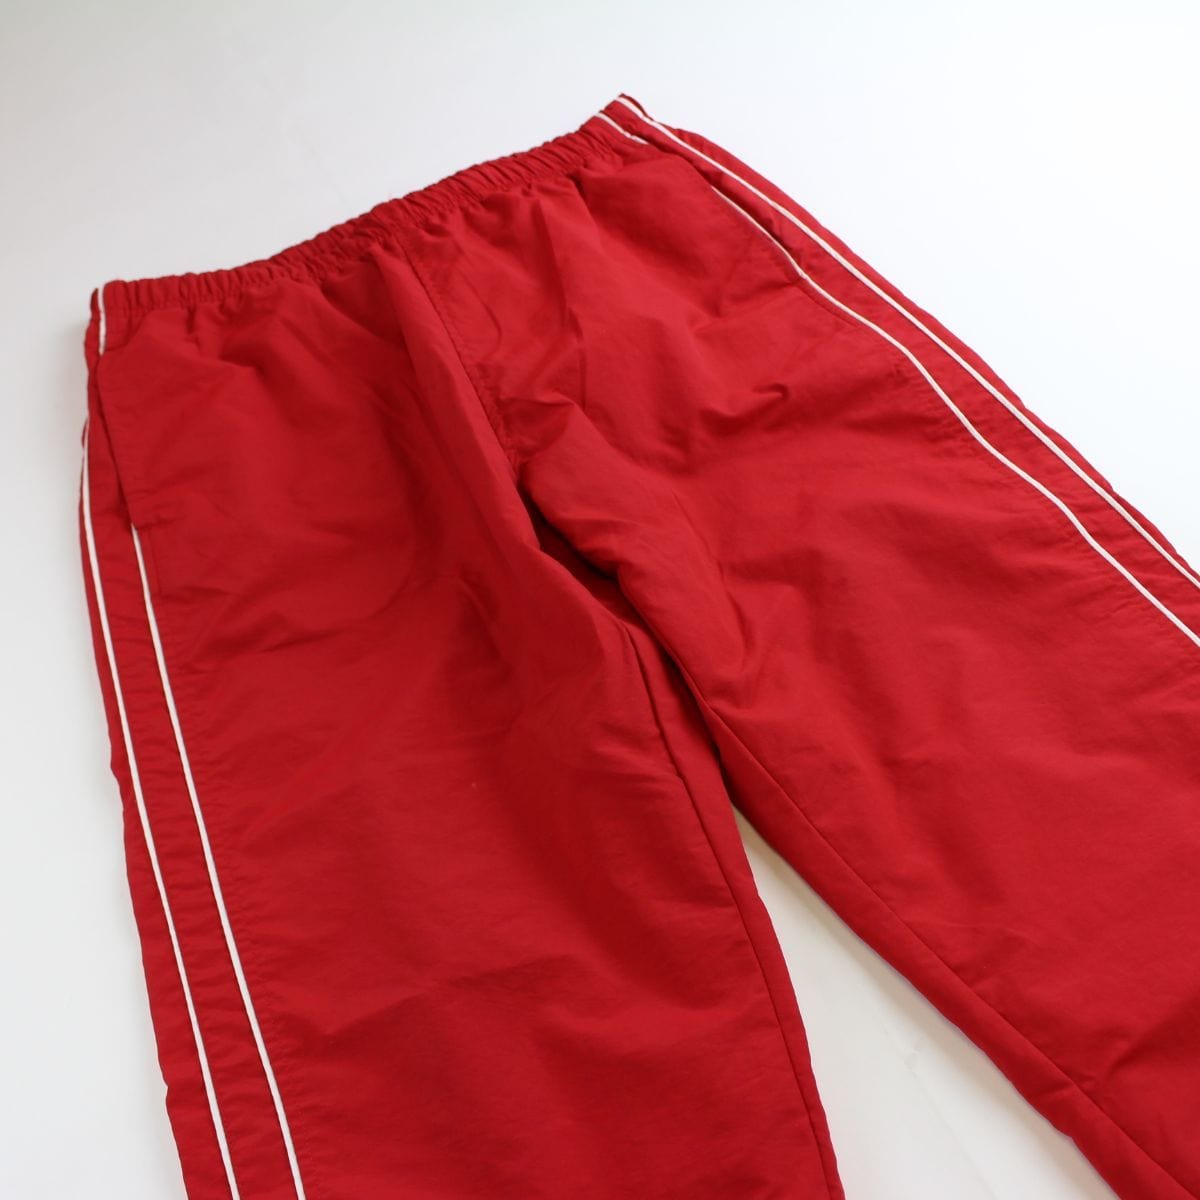 supreme red track pants - SaruGeneral